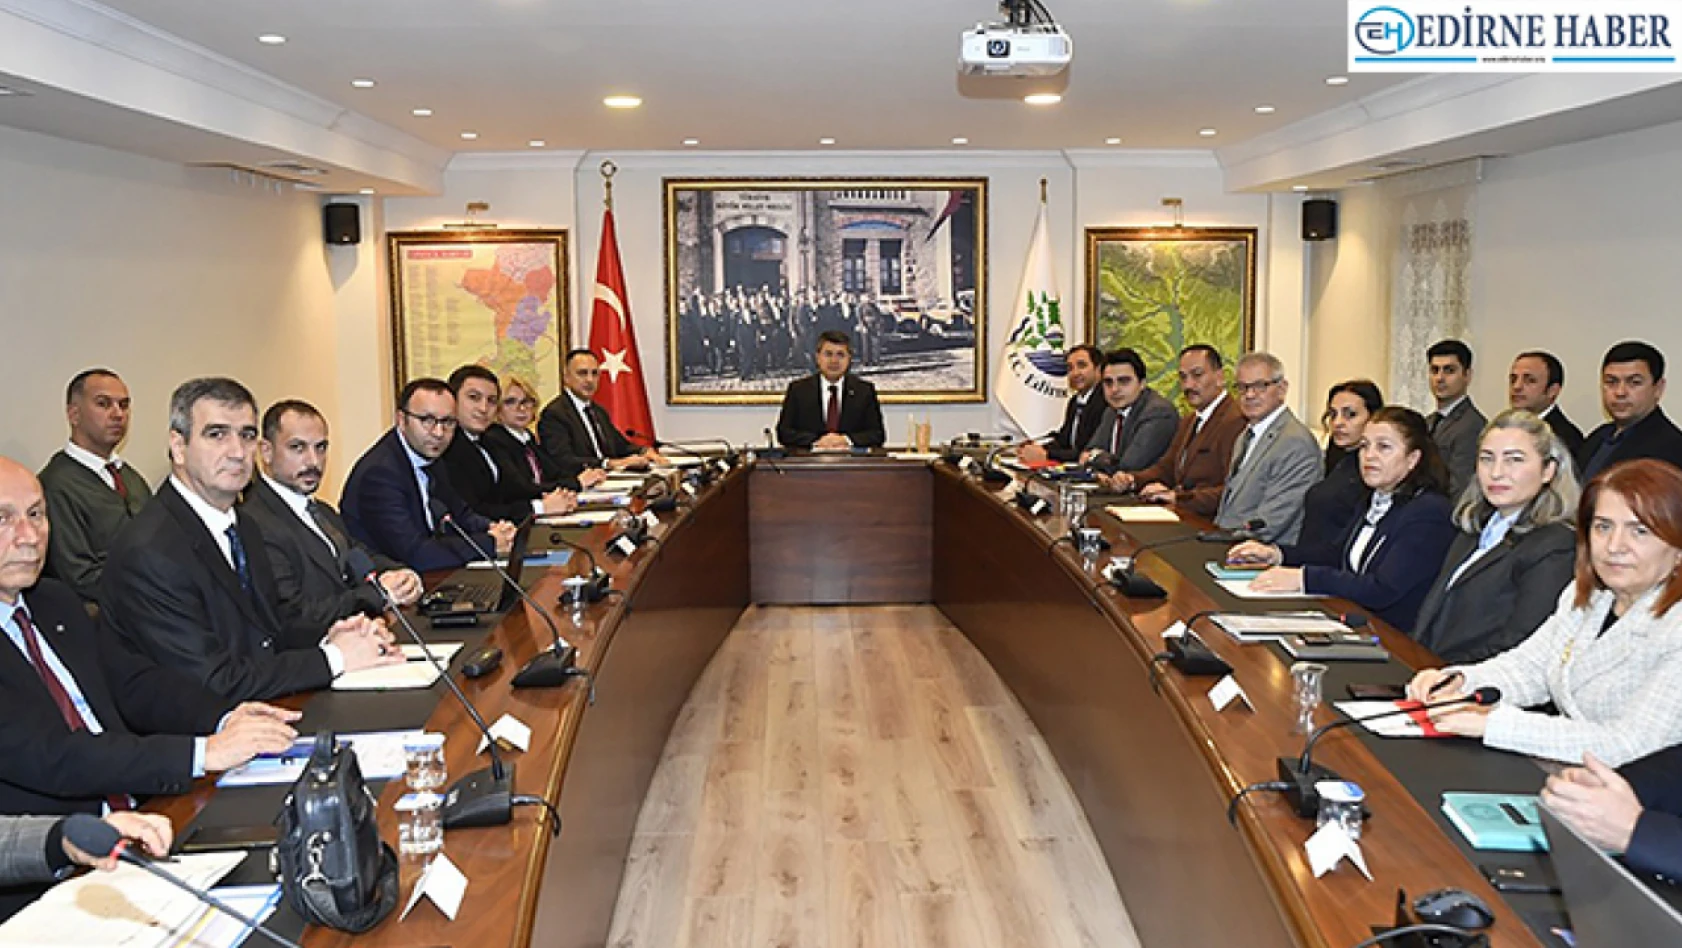 İçişleri Bakanlığının 'MİDAS' Projesi Edirne'den başlatılacak